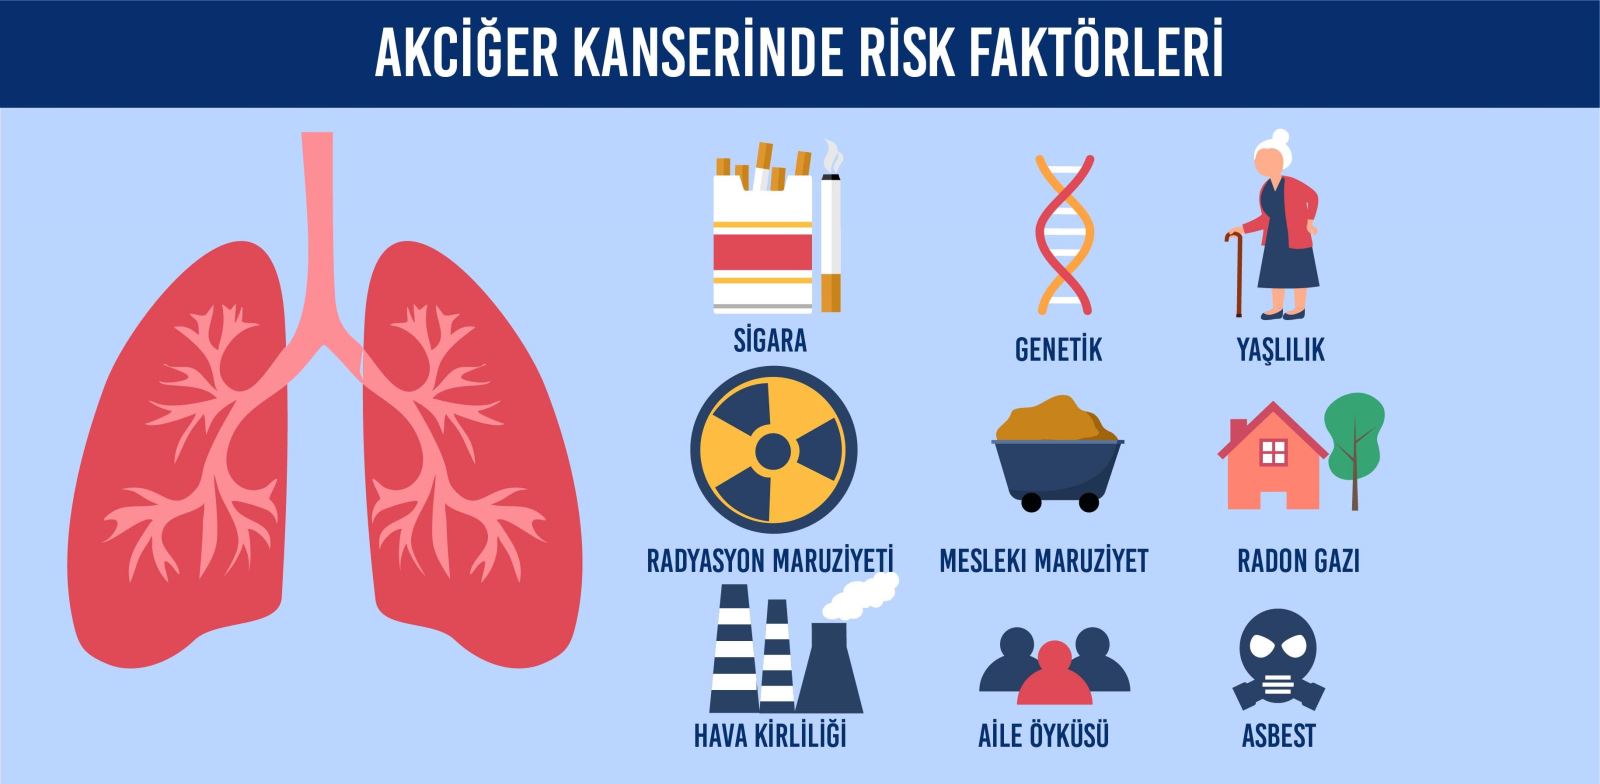 Akciğer kanserinde risk faktörleri